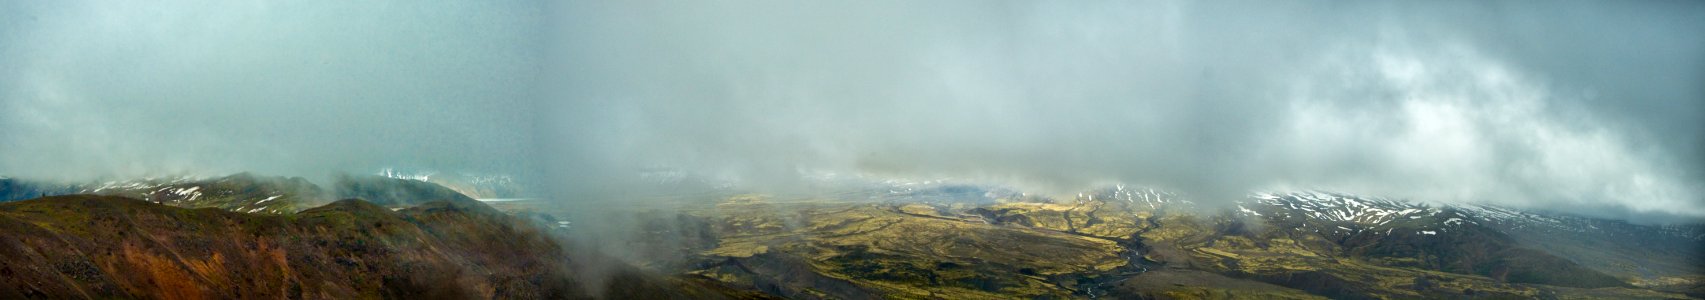 Mt St Helens 30th Anniversary Panoramic-Gifford Pinchot photo